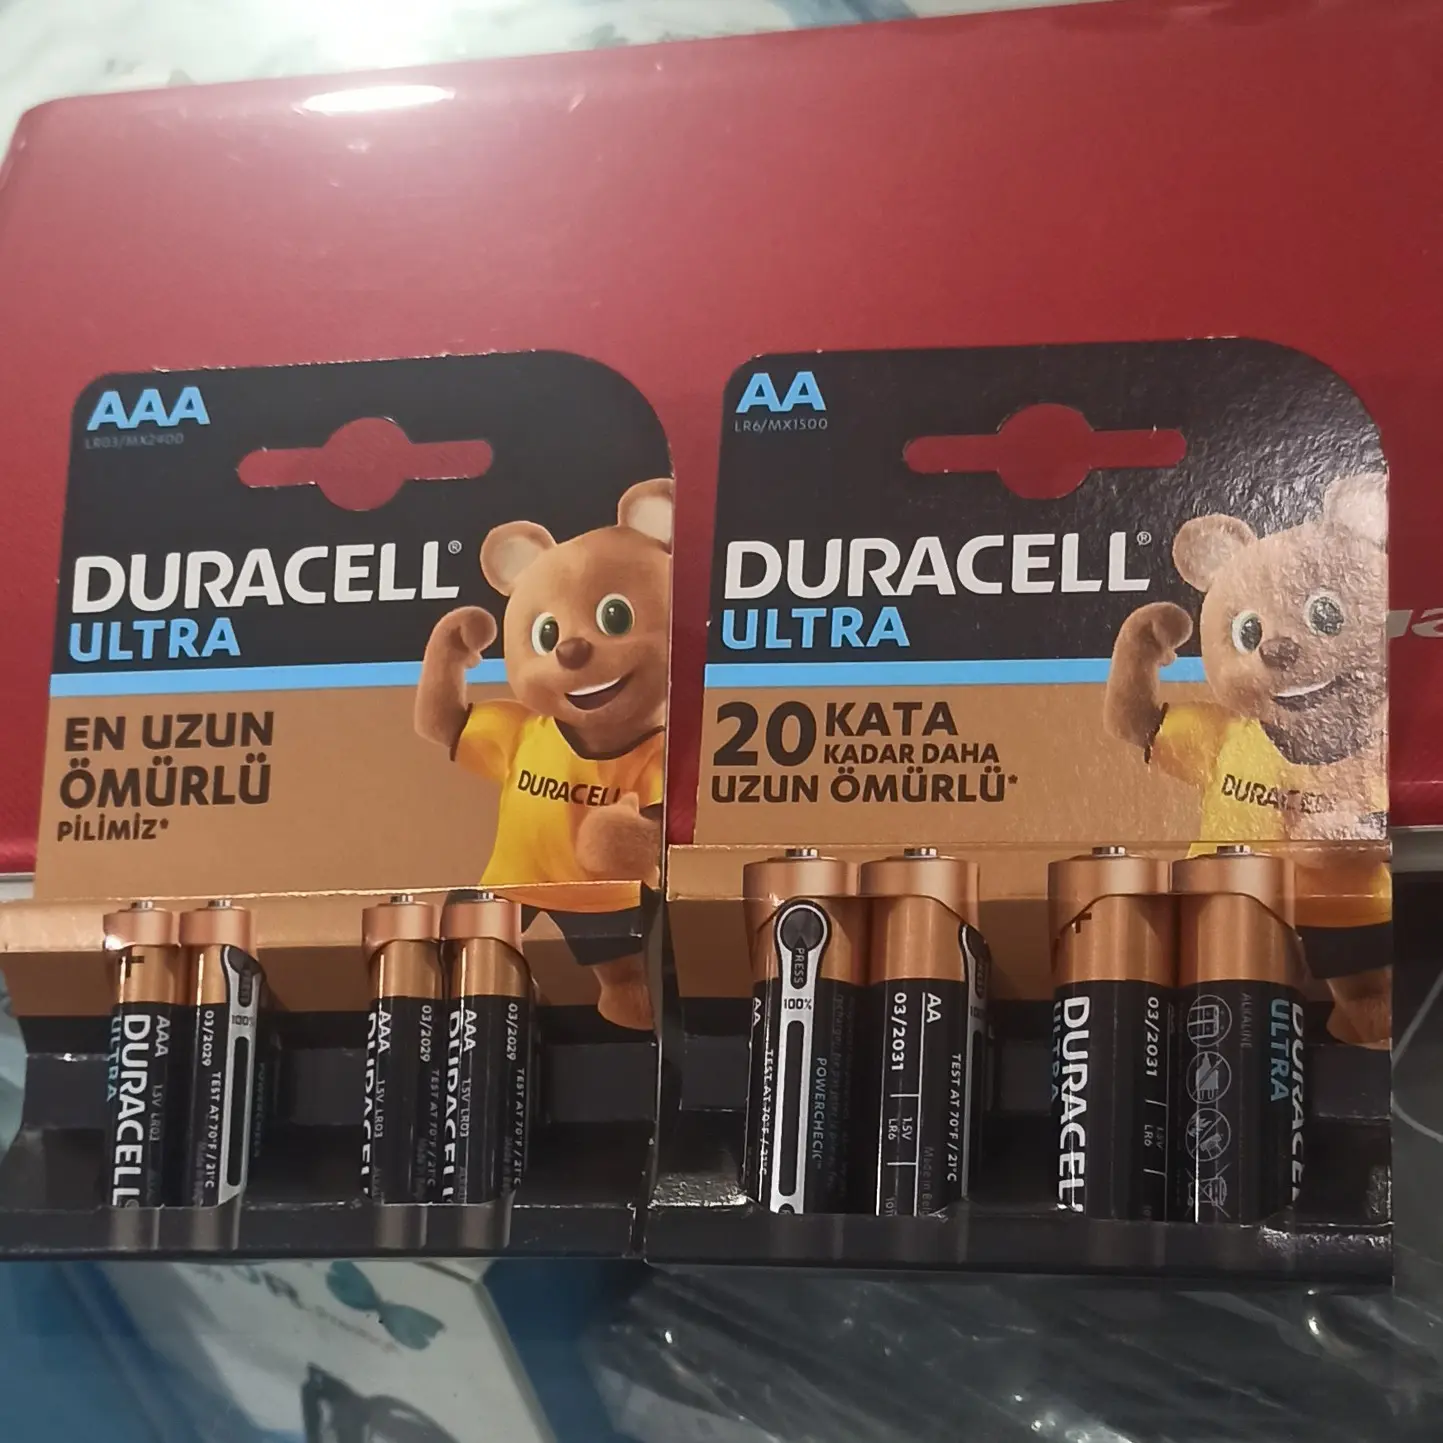 باتری قلمی دوراسل مدل Ultra بسته 4 عددی اصلی با تضمین کیفیت